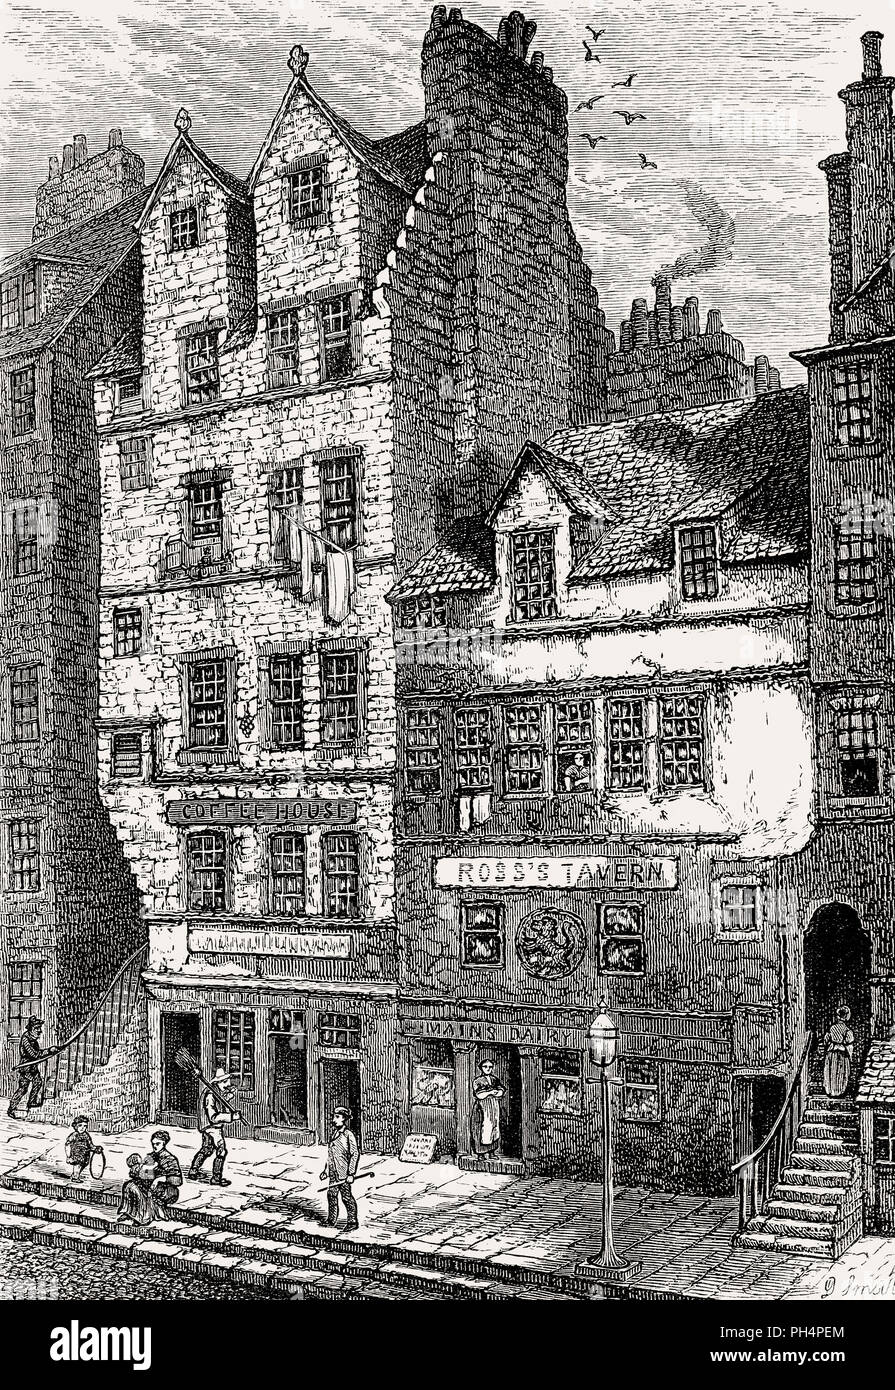 Gladstone's Land, Lawnmarket, Édimbourg, Écosse, 17e siècle Banque D'Images